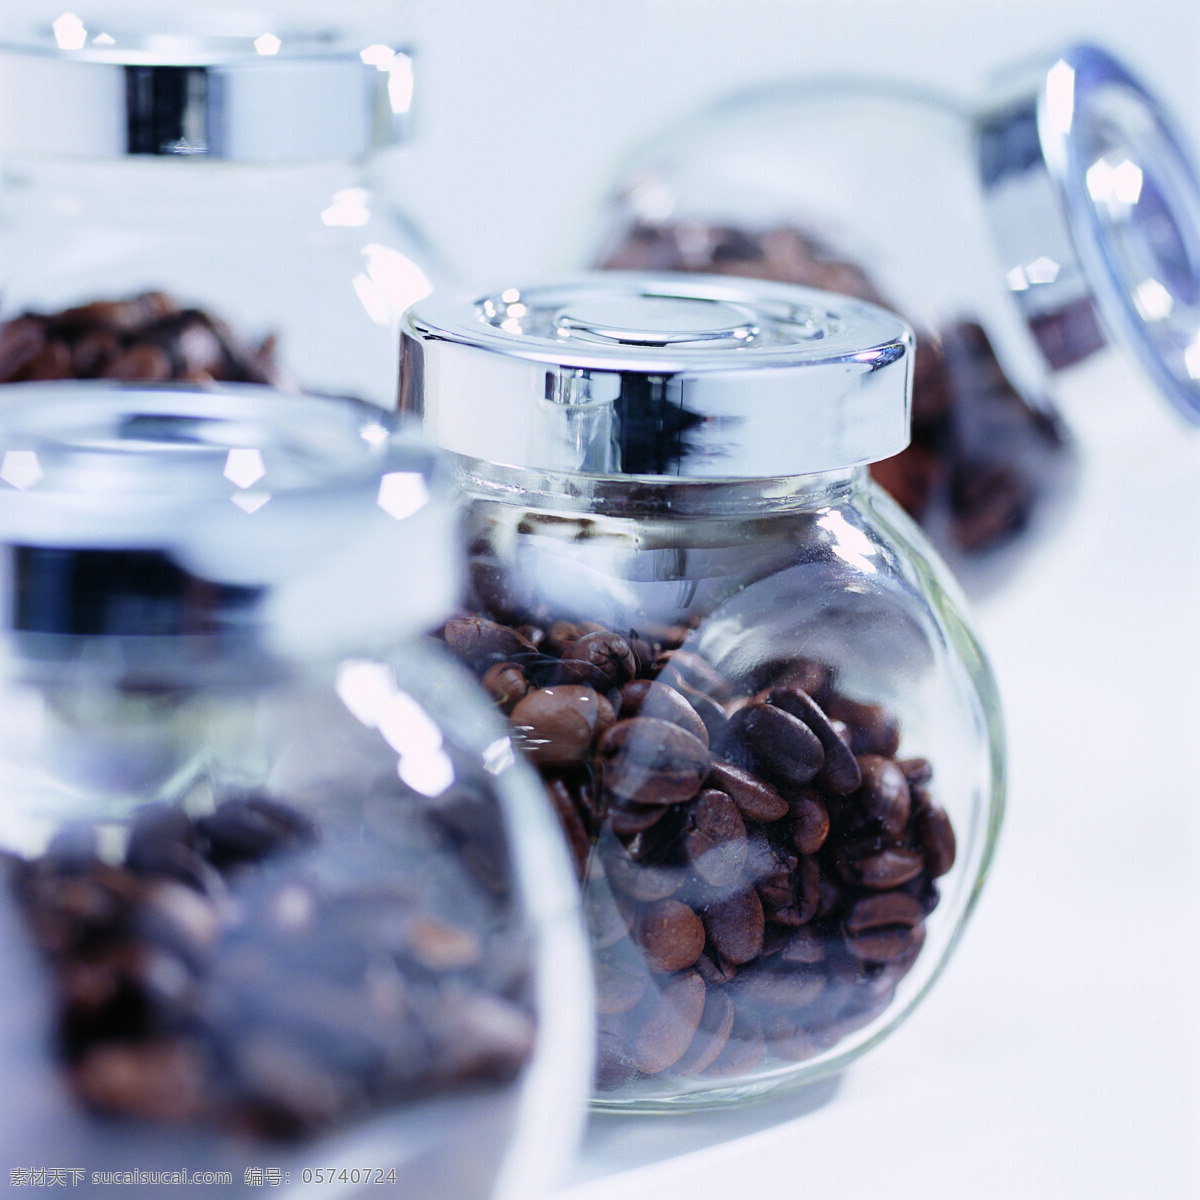 玻璃 罐子 里 咖啡豆 咖啡 玻璃瓶 原料 颗粒 特写 摄影图 高清图片 咖啡图片 餐饮美食